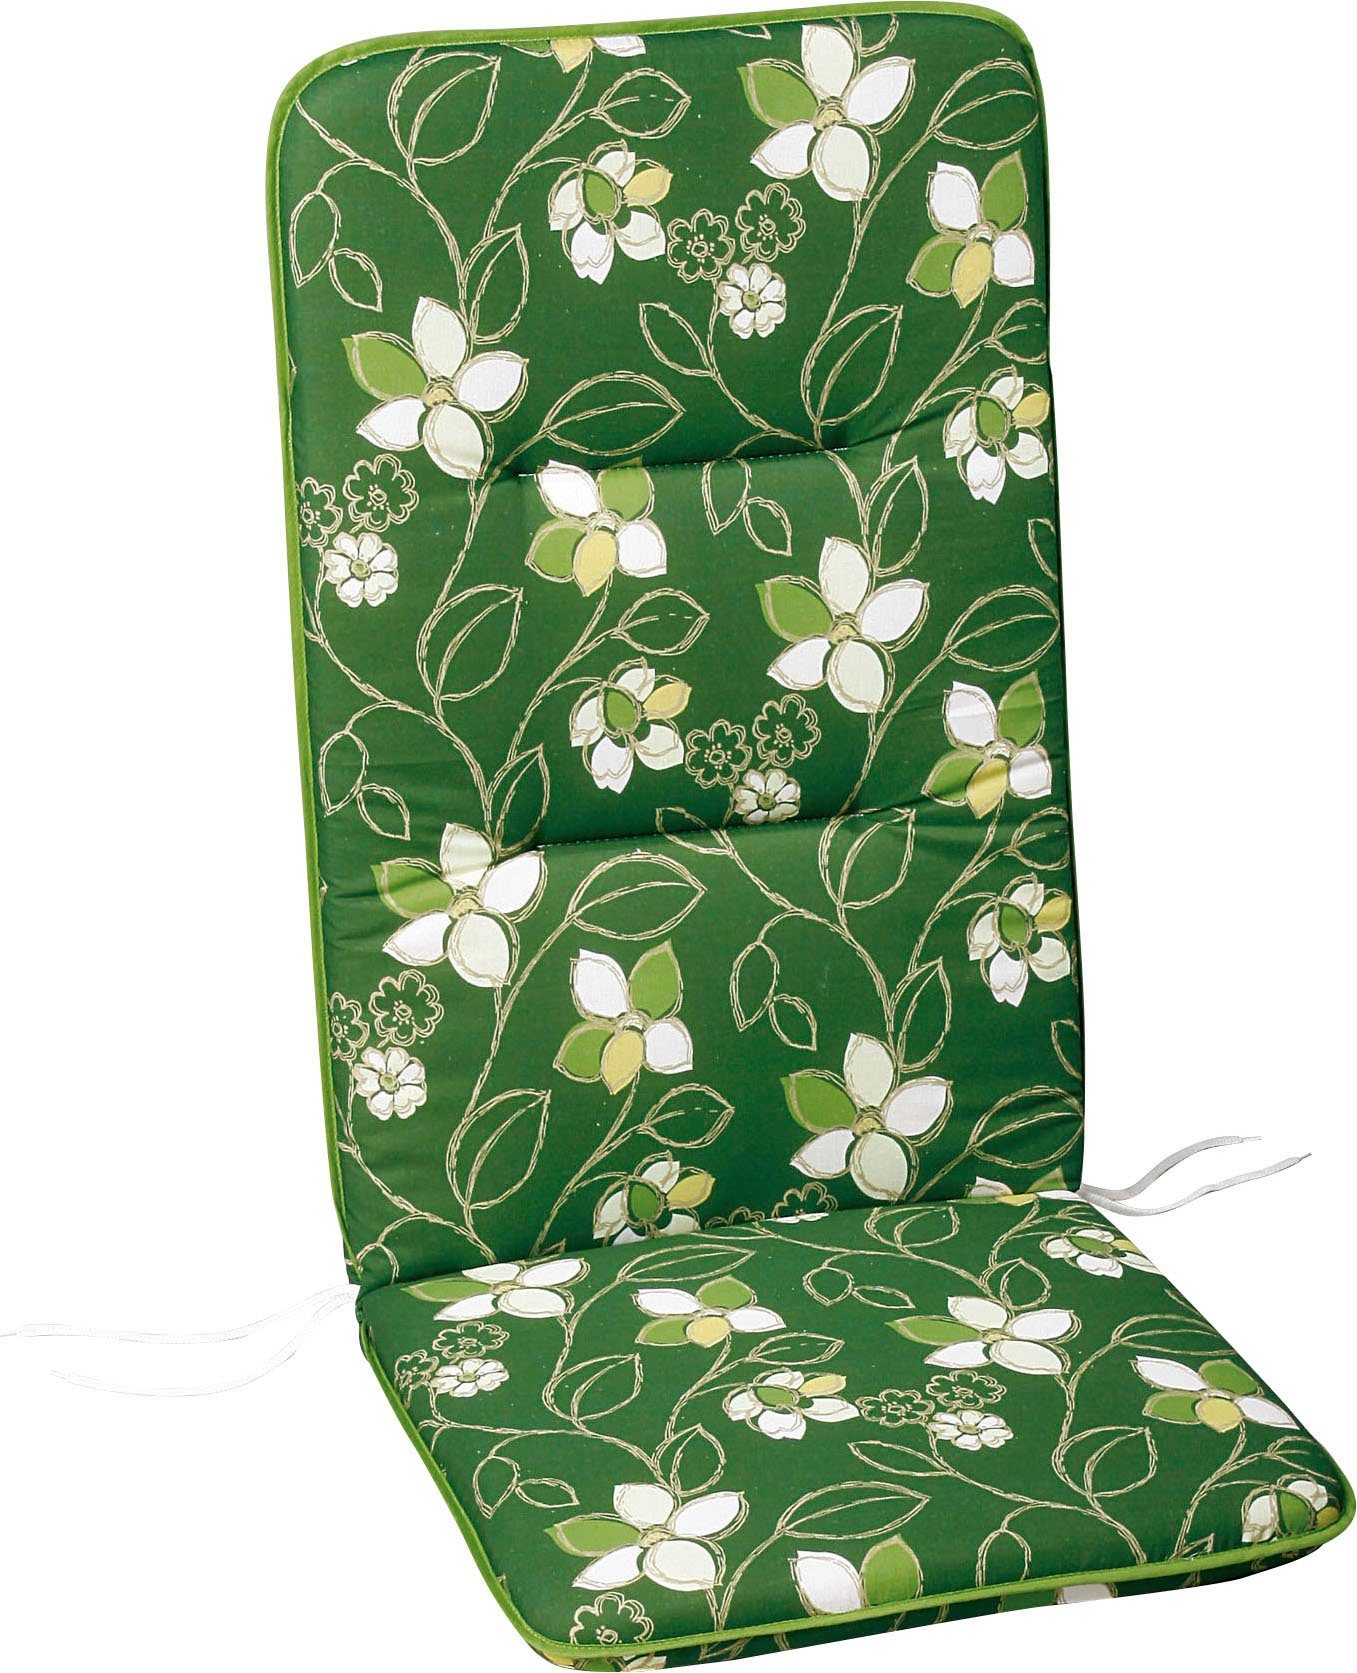 gemustert grün/beige/weiß Best Sesselauflage